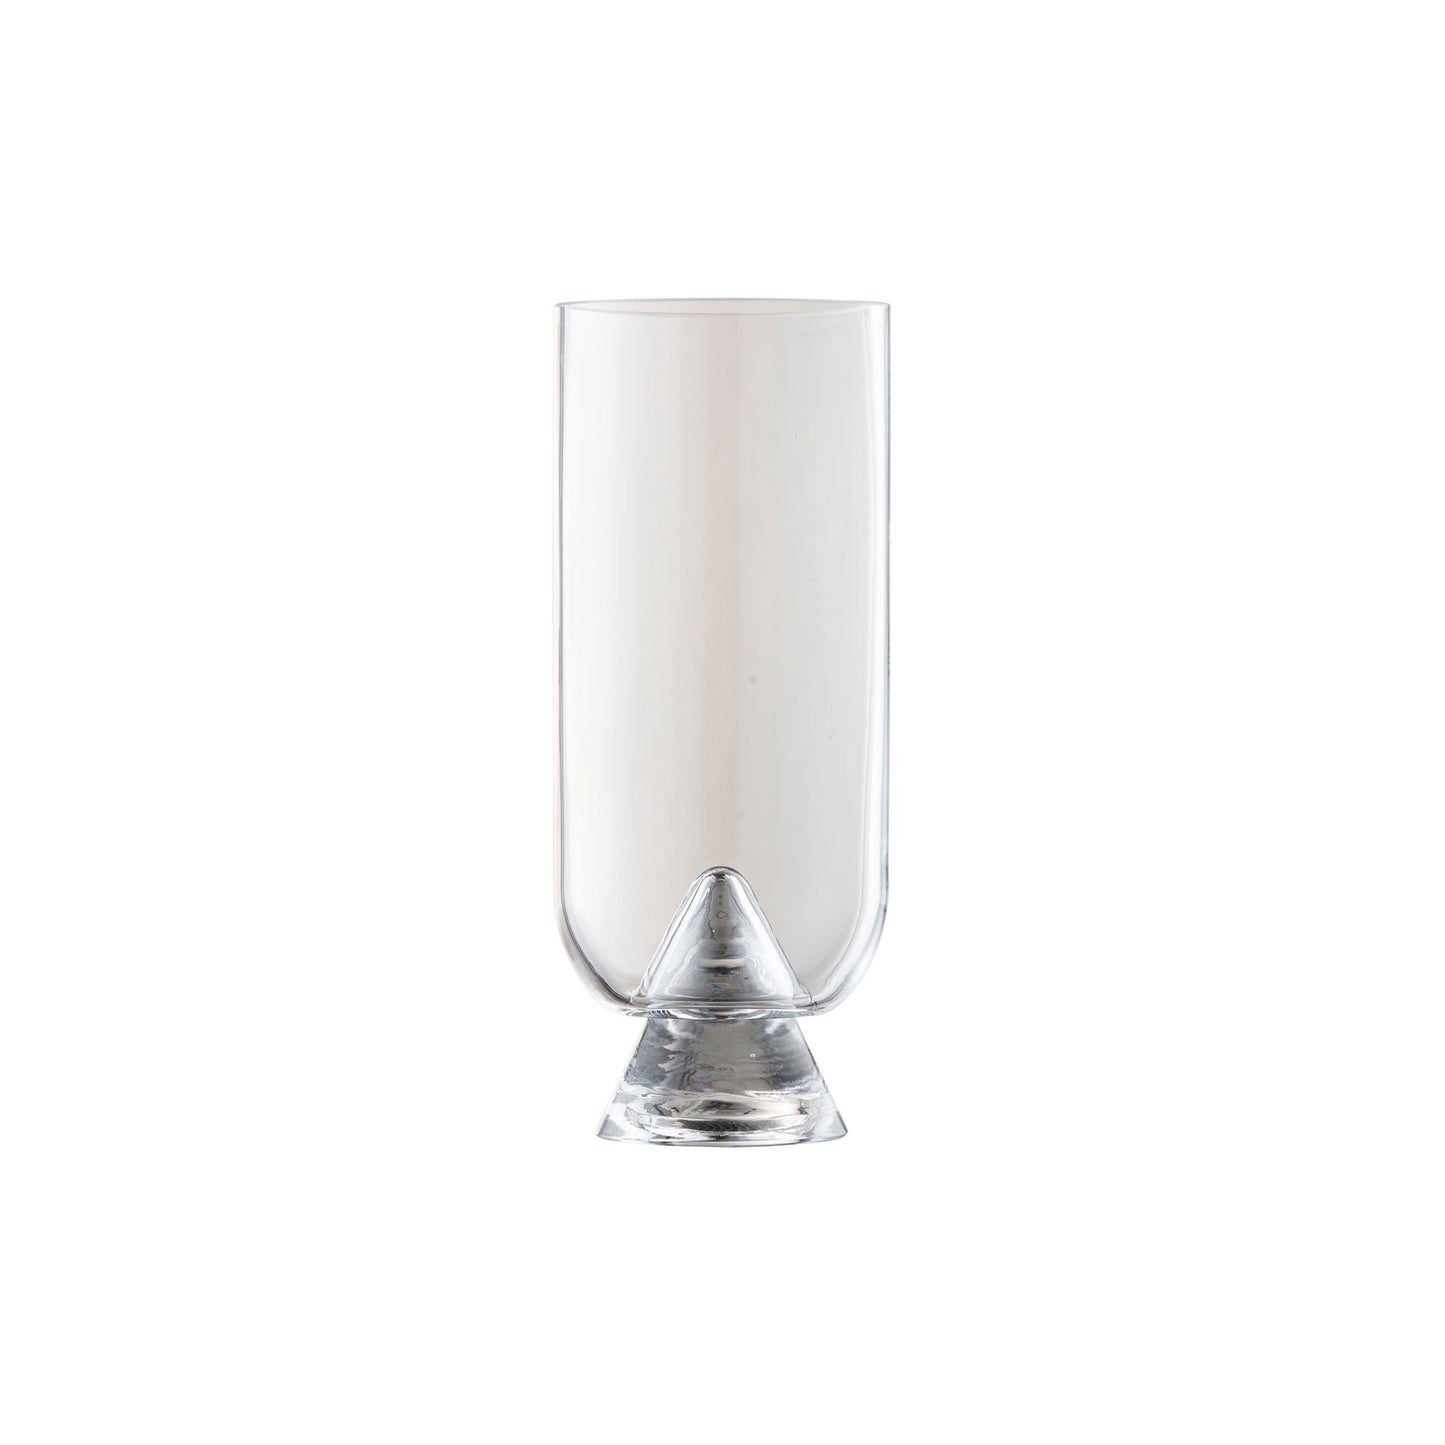 GLACIES Vase H18 cm by AYTM #Clear